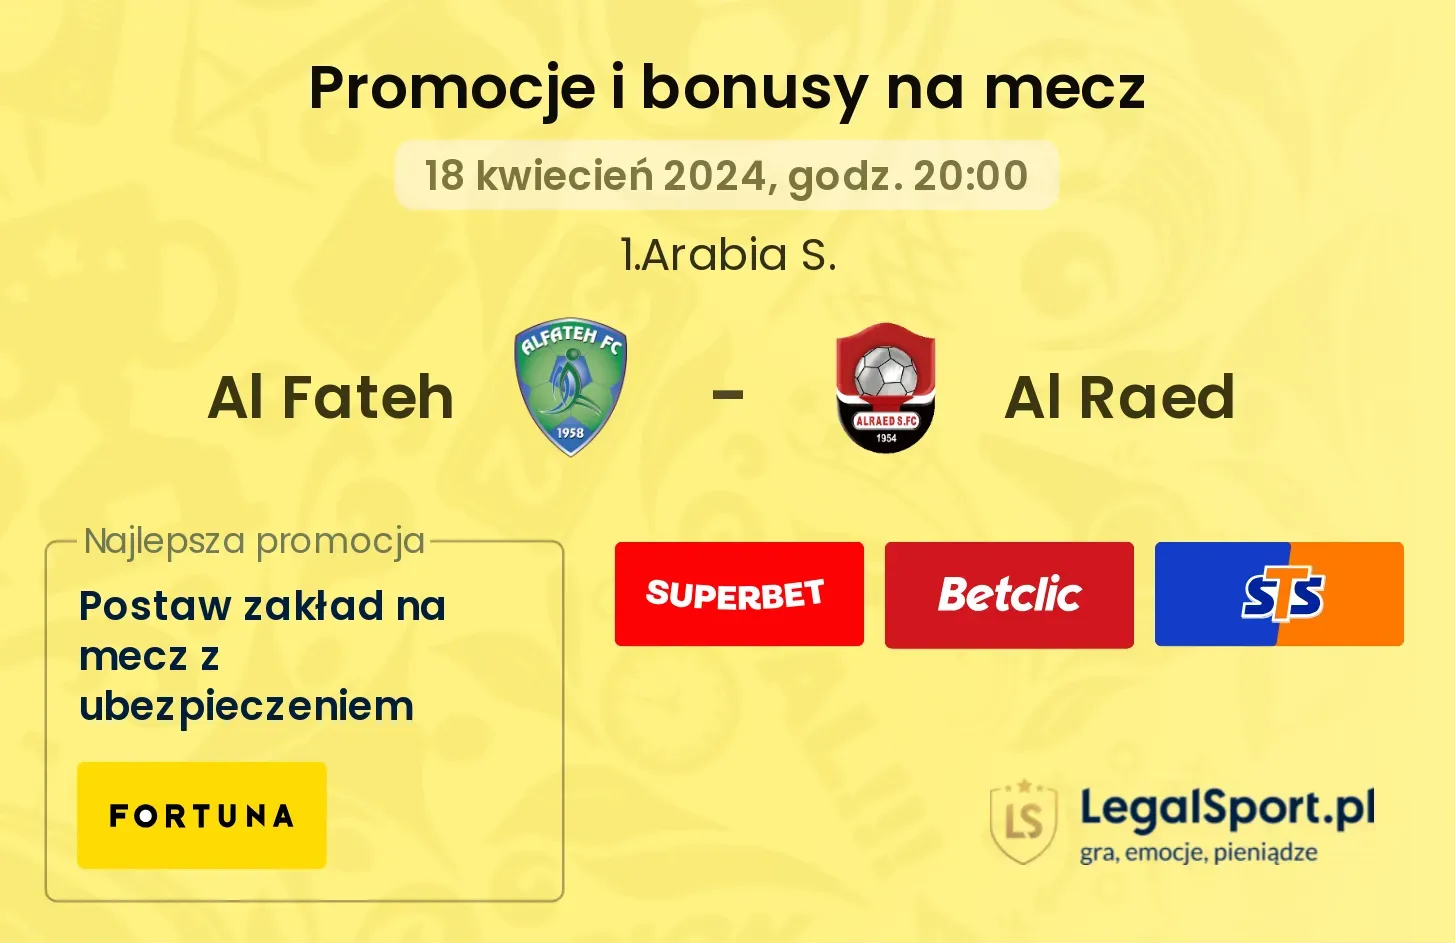 Al Fateh - Al Raed promocje bonusy na mecz